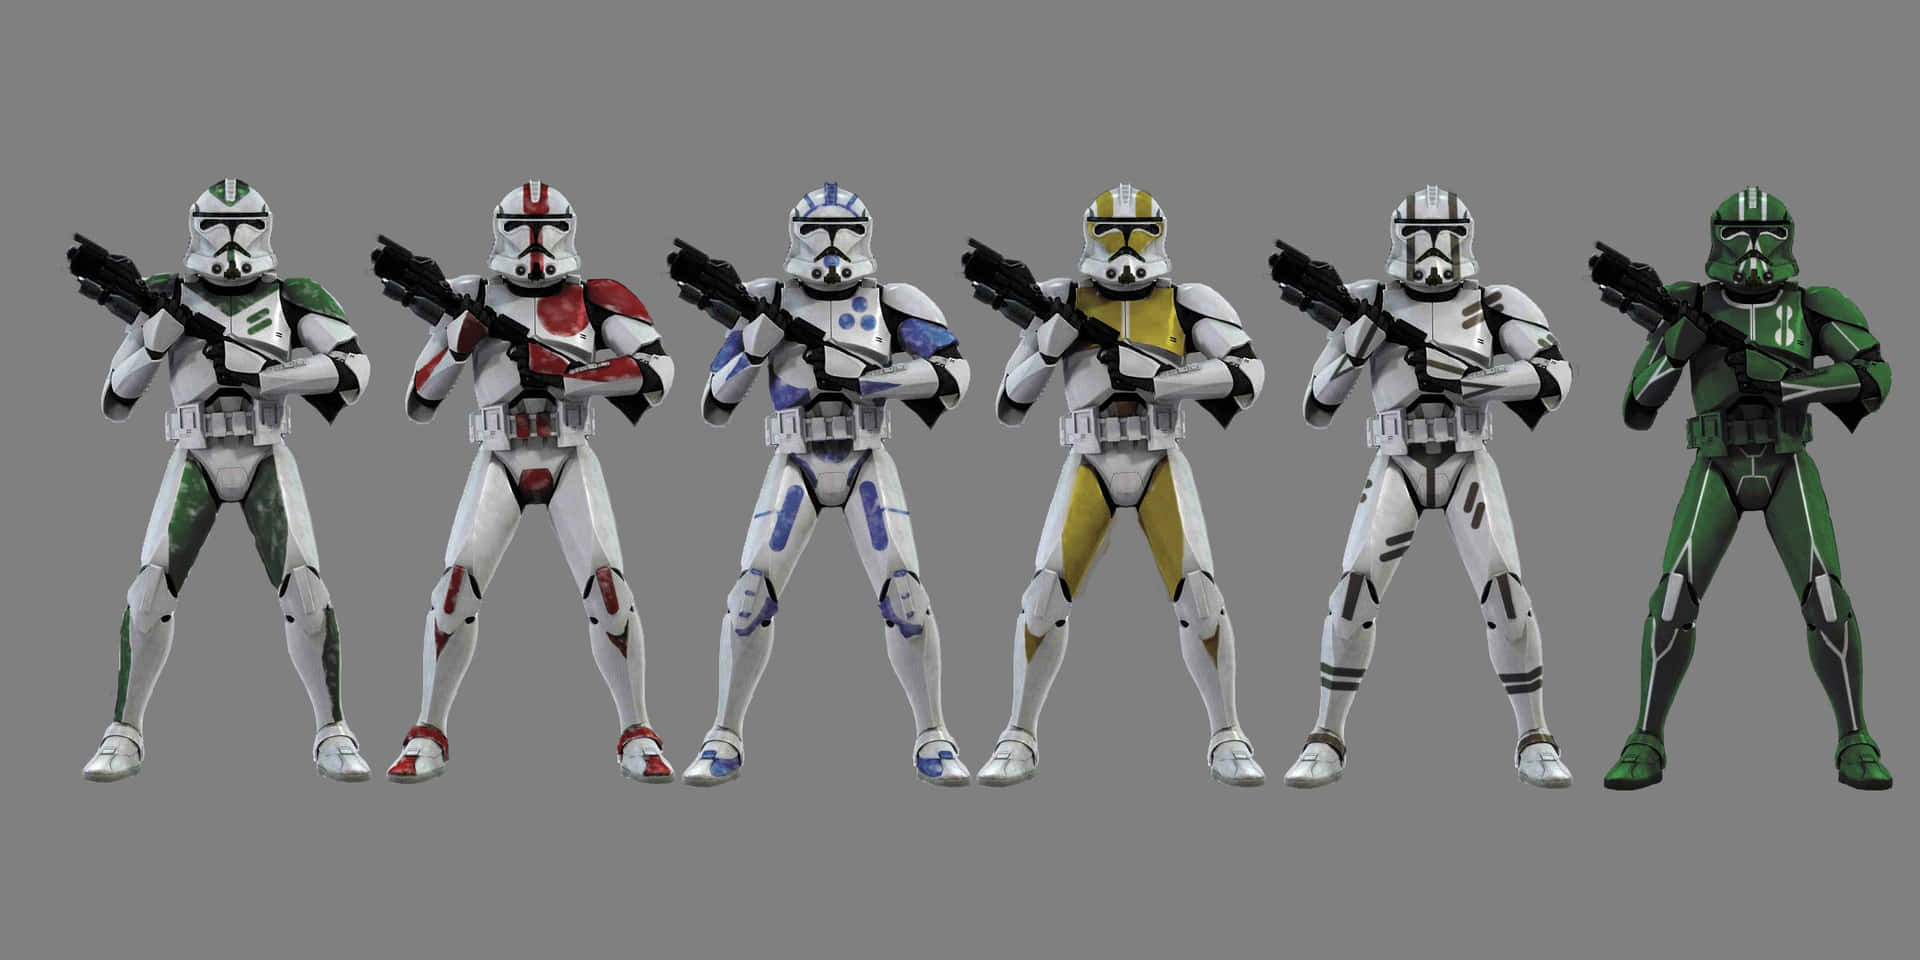 Preparese Para A Batalha Com Estes Clone Troopers Do Universo Star Wars! Papel de Parede